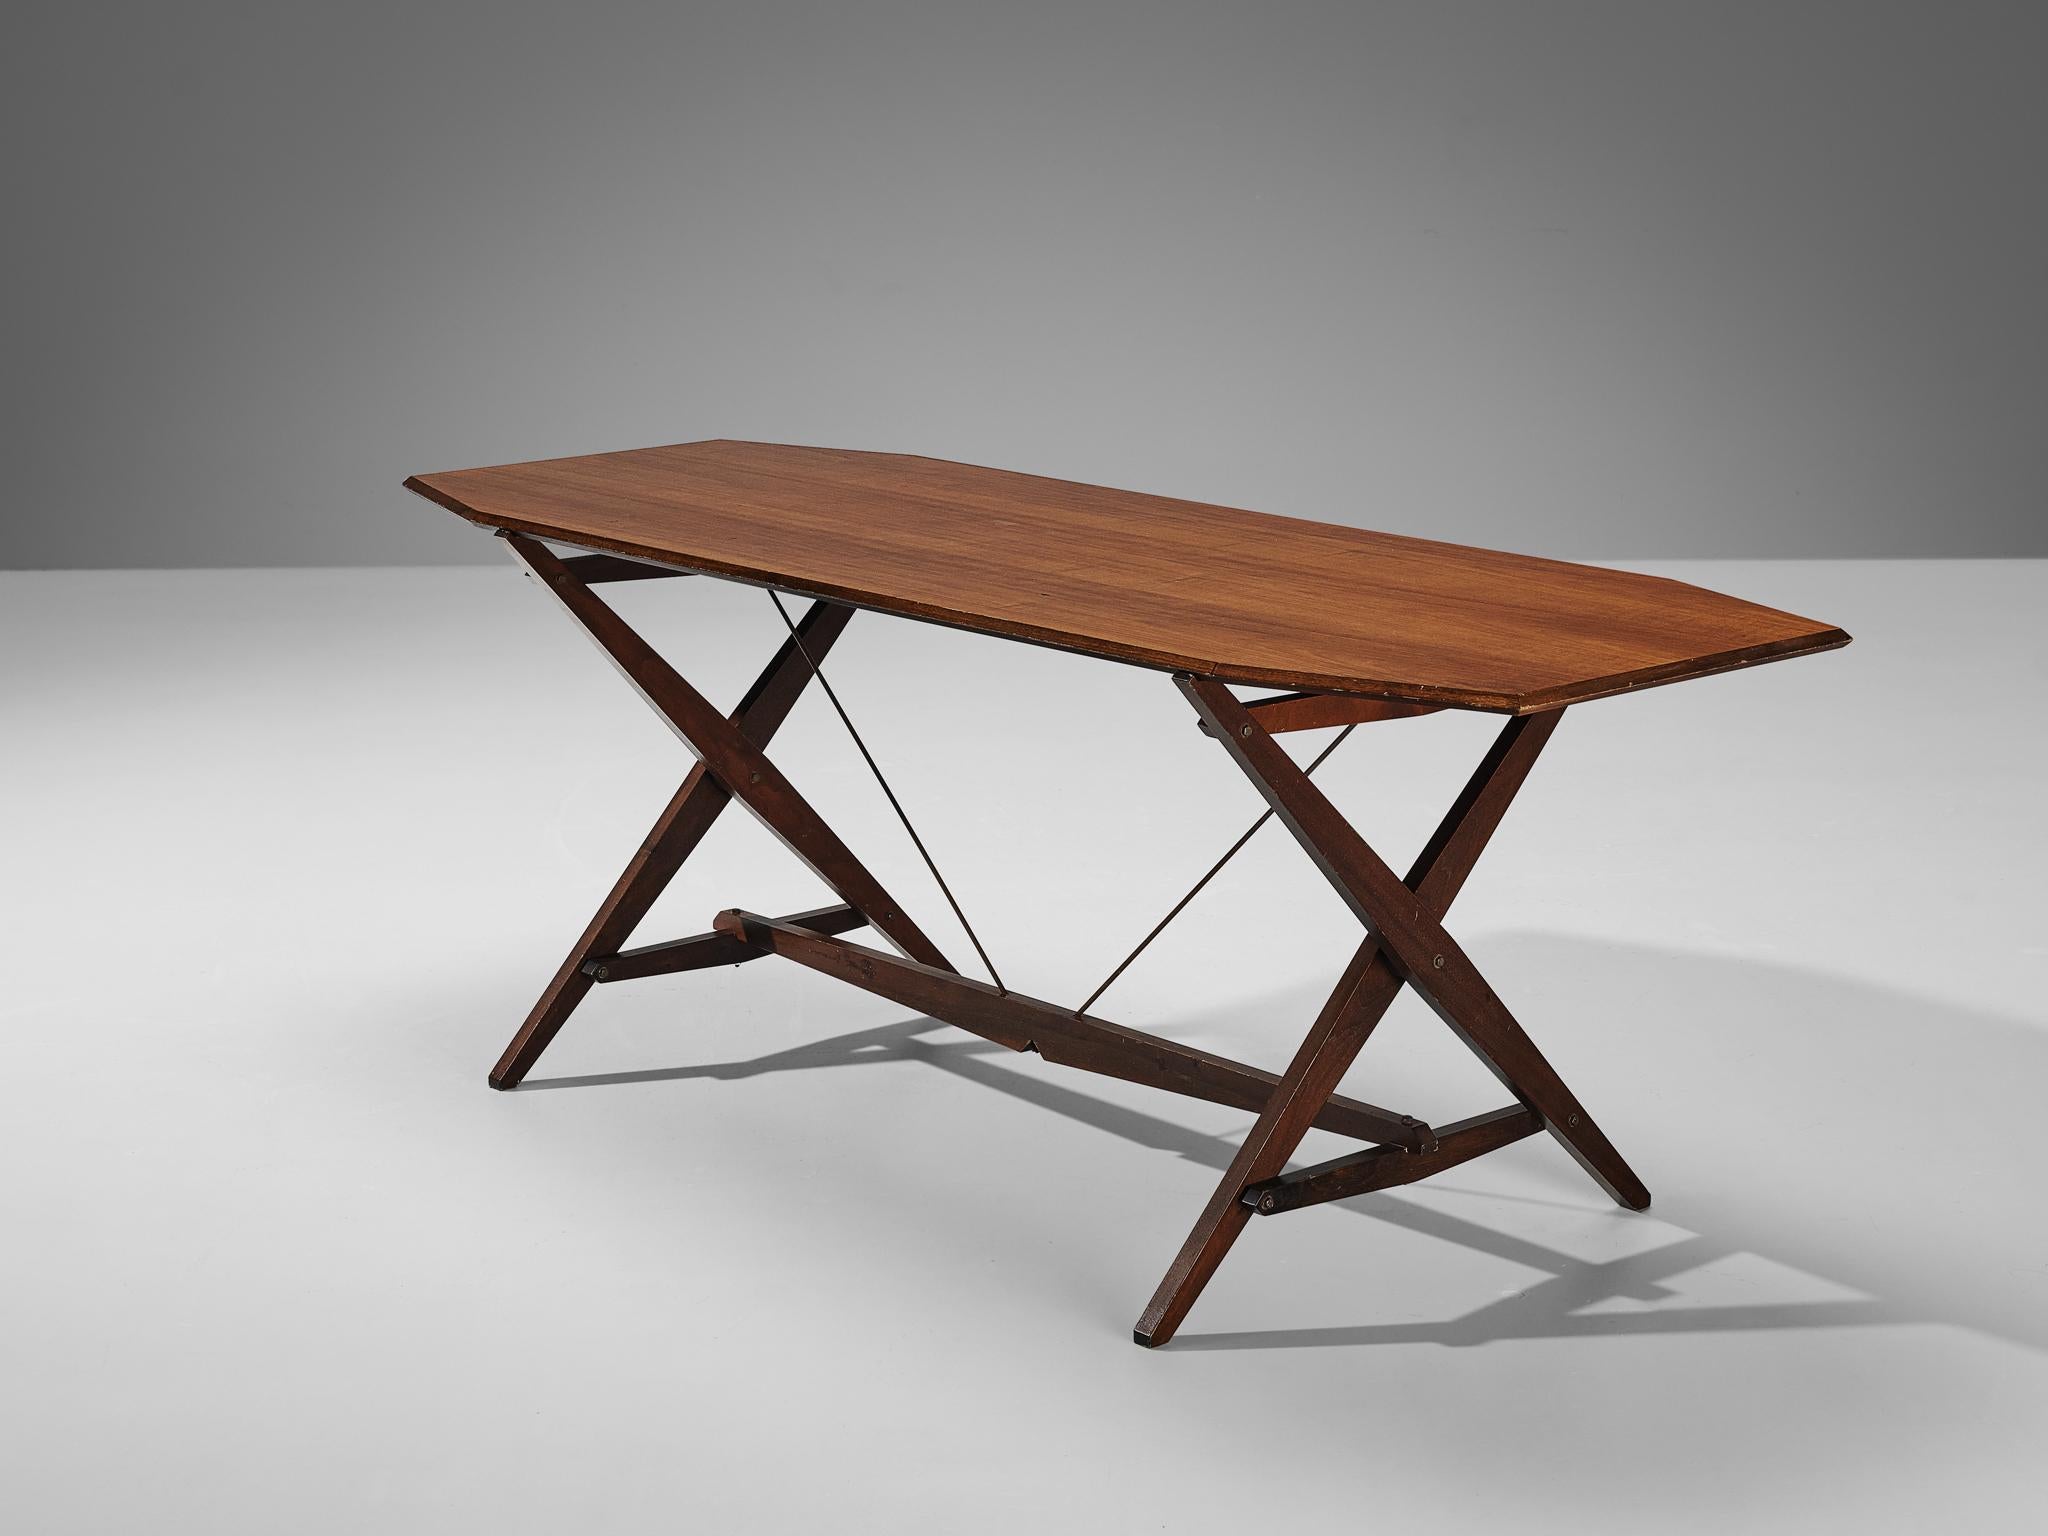 Franco Albini für Poggi, Esstisch, Modell TL2, Nussbaum und Eisen, Italien, 1951.

Der Tisch TL2 von Franco Albini zeichnet sich durch sein einfaches und schlichtes Design aus. Die rechteckige Tischplatte mit abgeschrägten Kanten ist aus dunklem